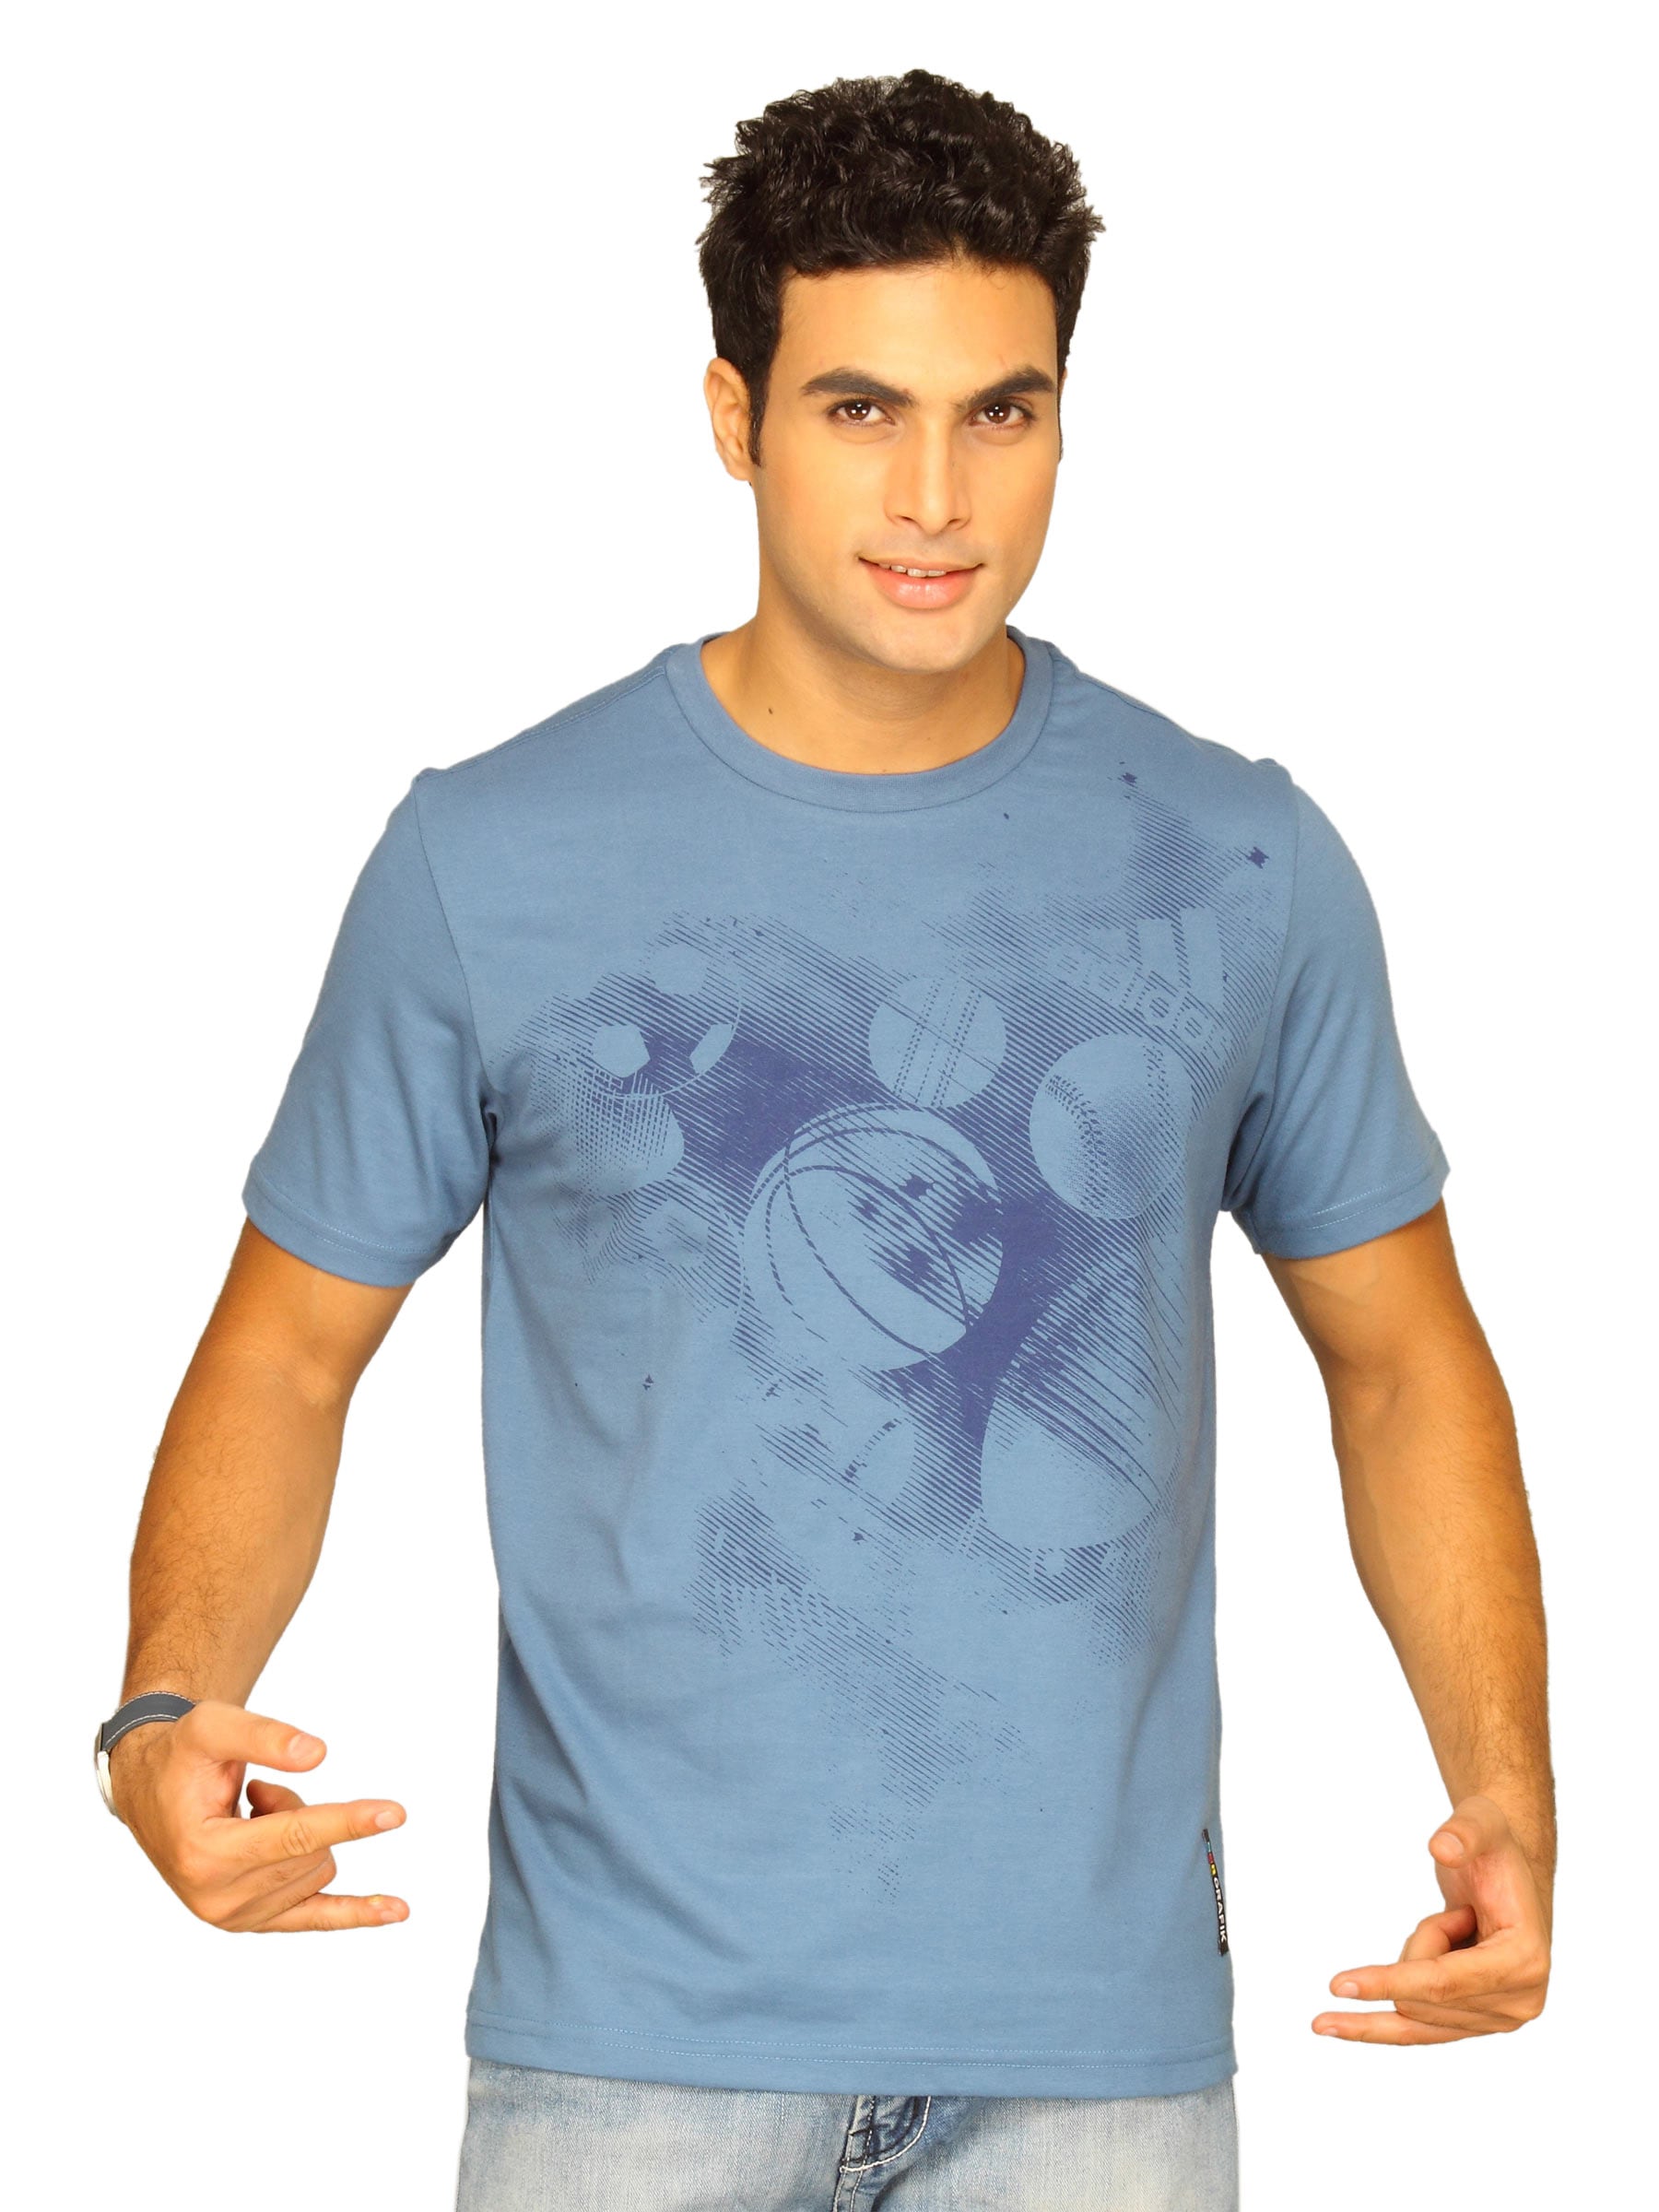 ADIDAS Men's Best Shot Teal Blue T-shirt